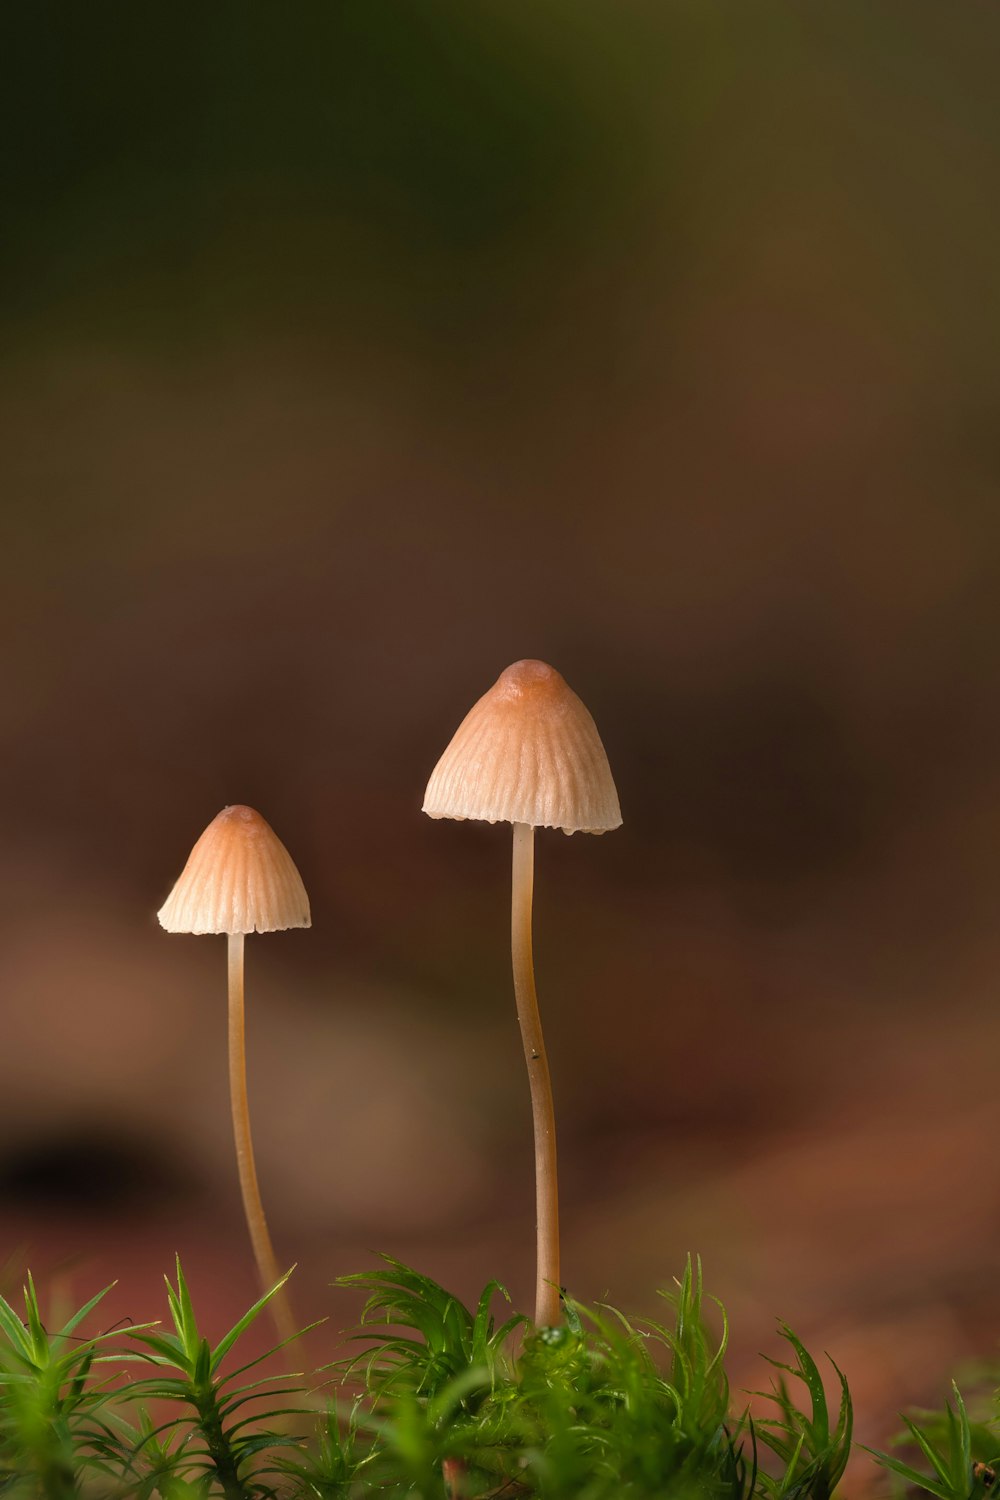 ein paar Pilze, die auf einem moosbedeckten Boden sitzen